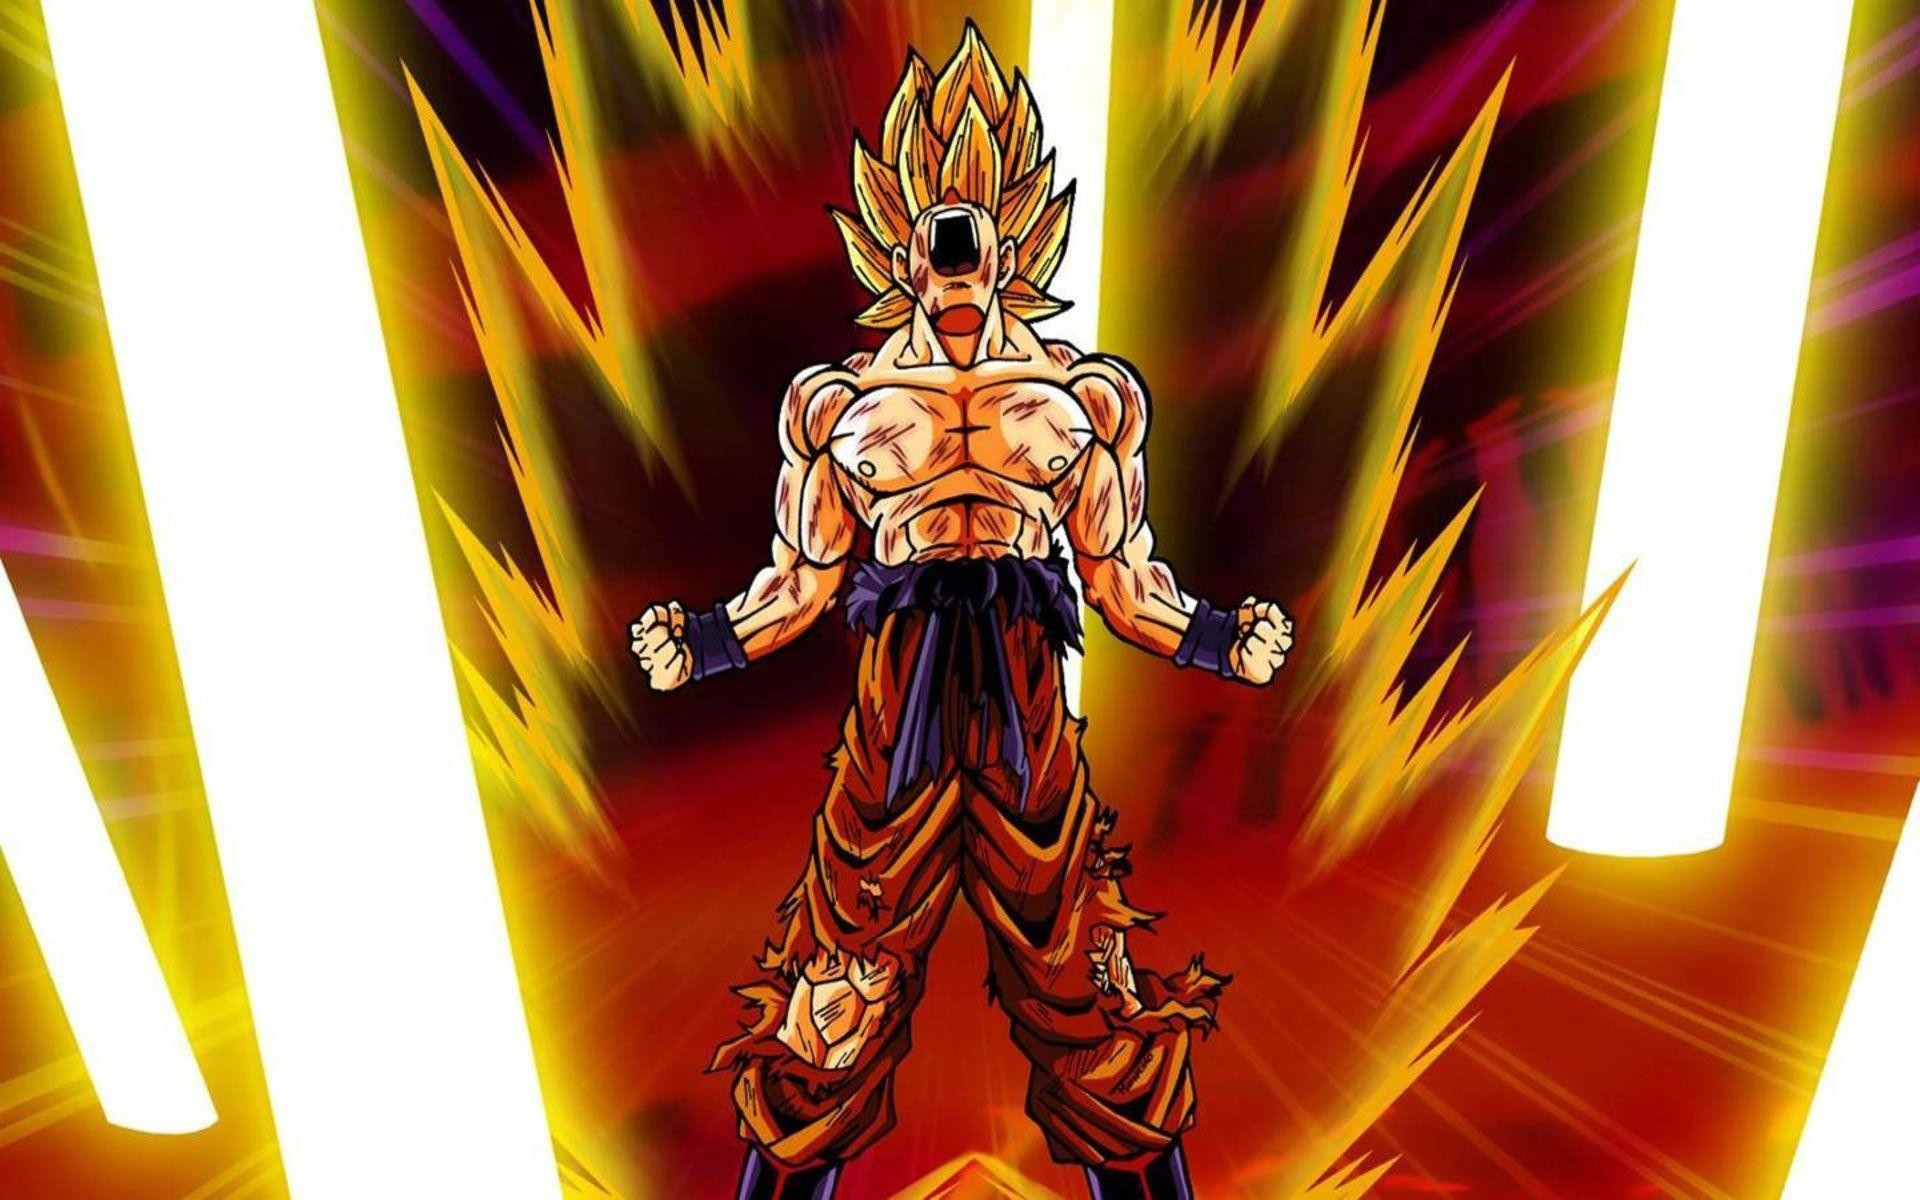 Dragon Ball Z Wallpaper Goku Super Saiyan God Wallpapers Android